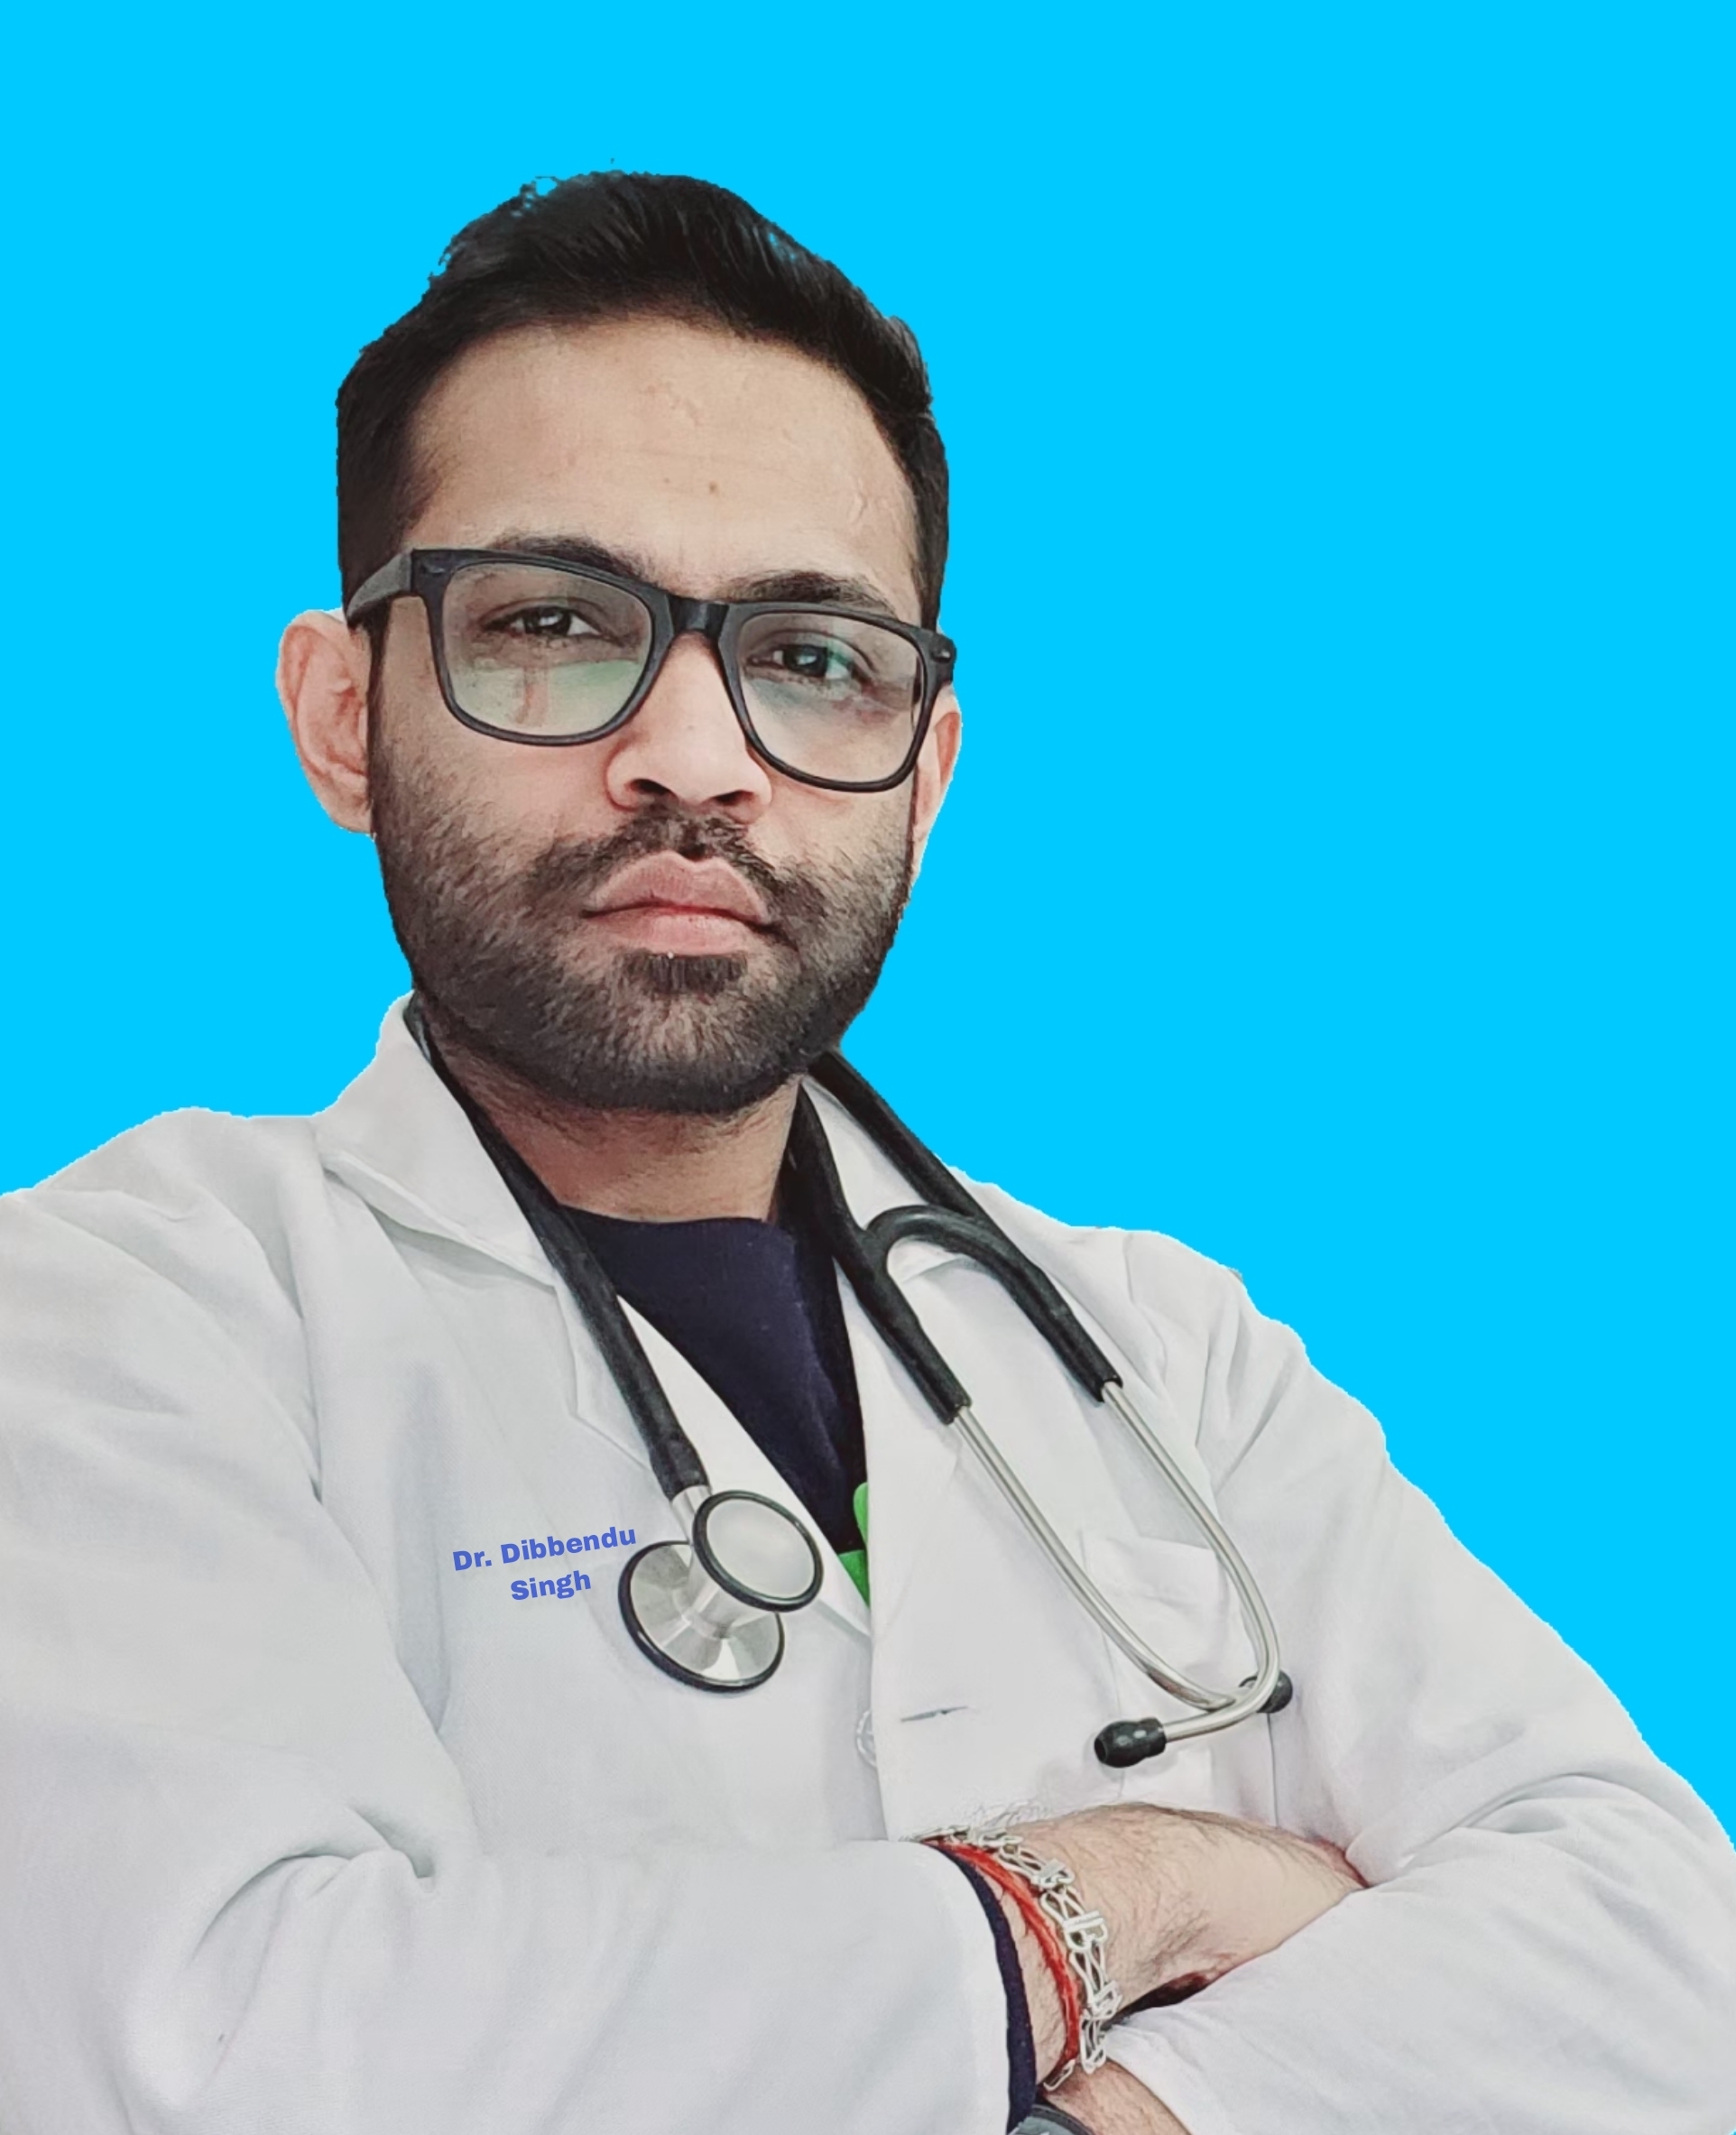 Dr. Dibbendu Singh